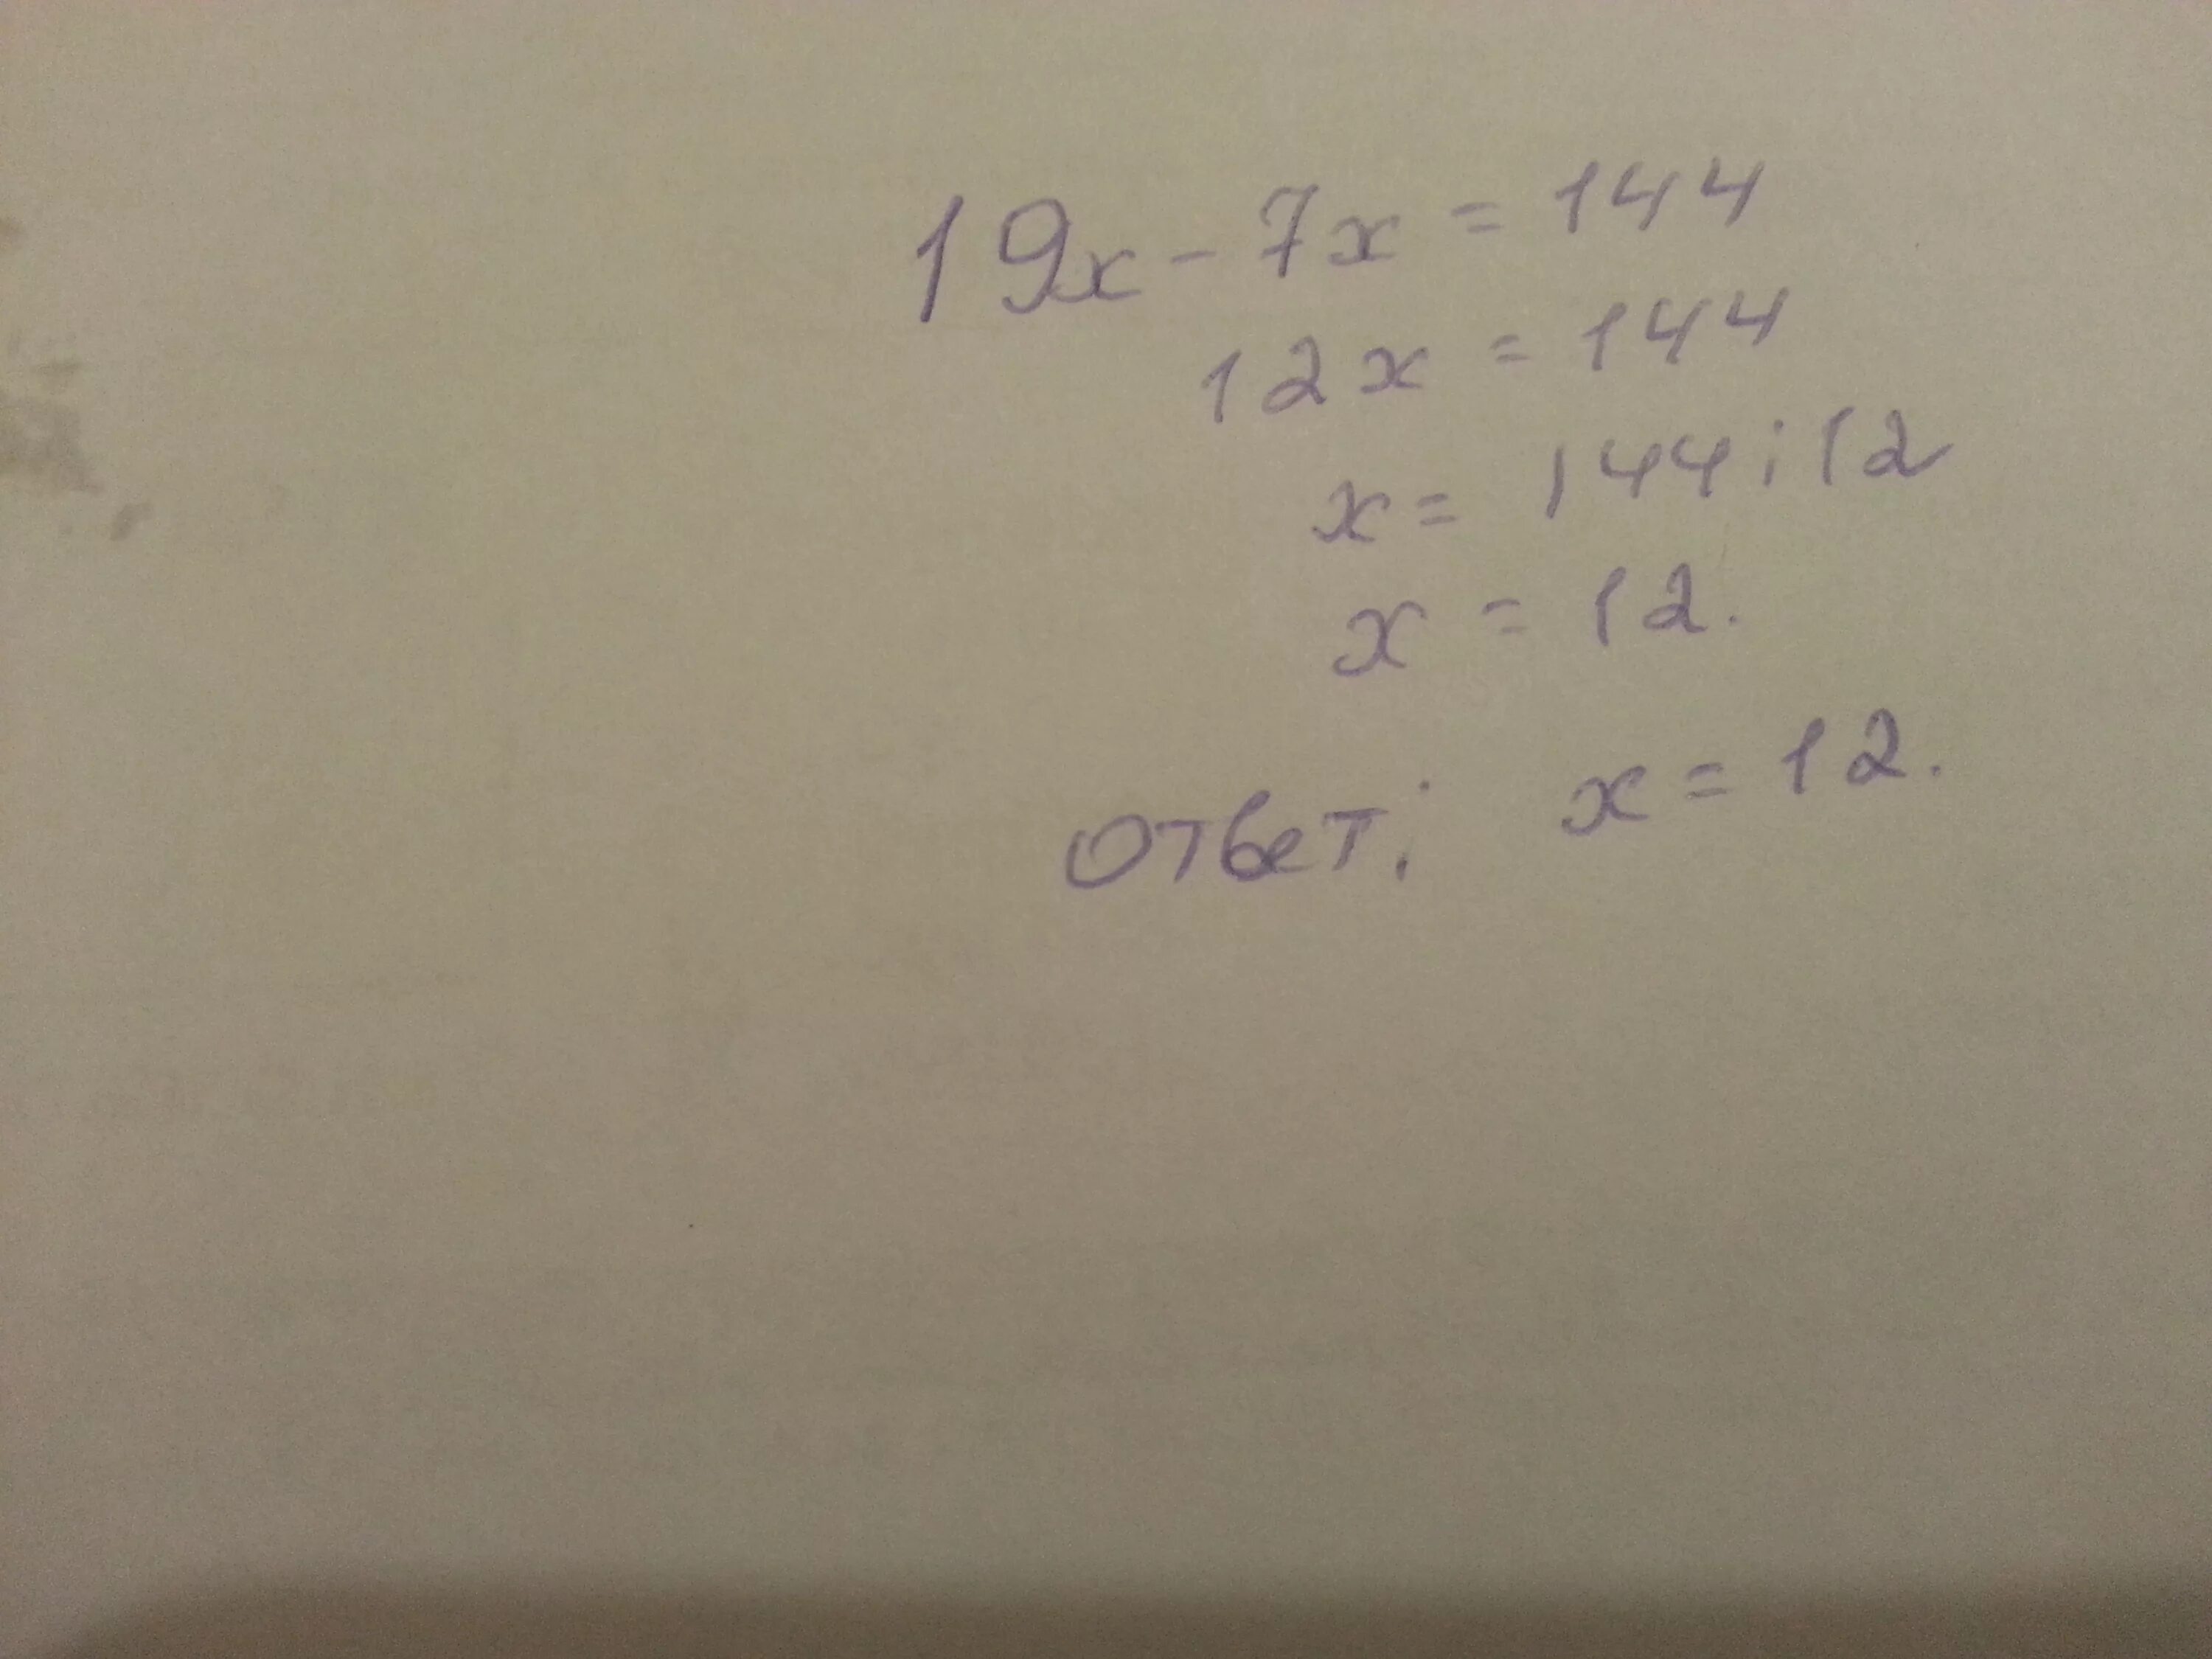 42 15 3x 46 3x 19. 19х-7х 144. 19х 7х 144 решение. Решение уравнения 19x-7x 144. 19x-7x=144.